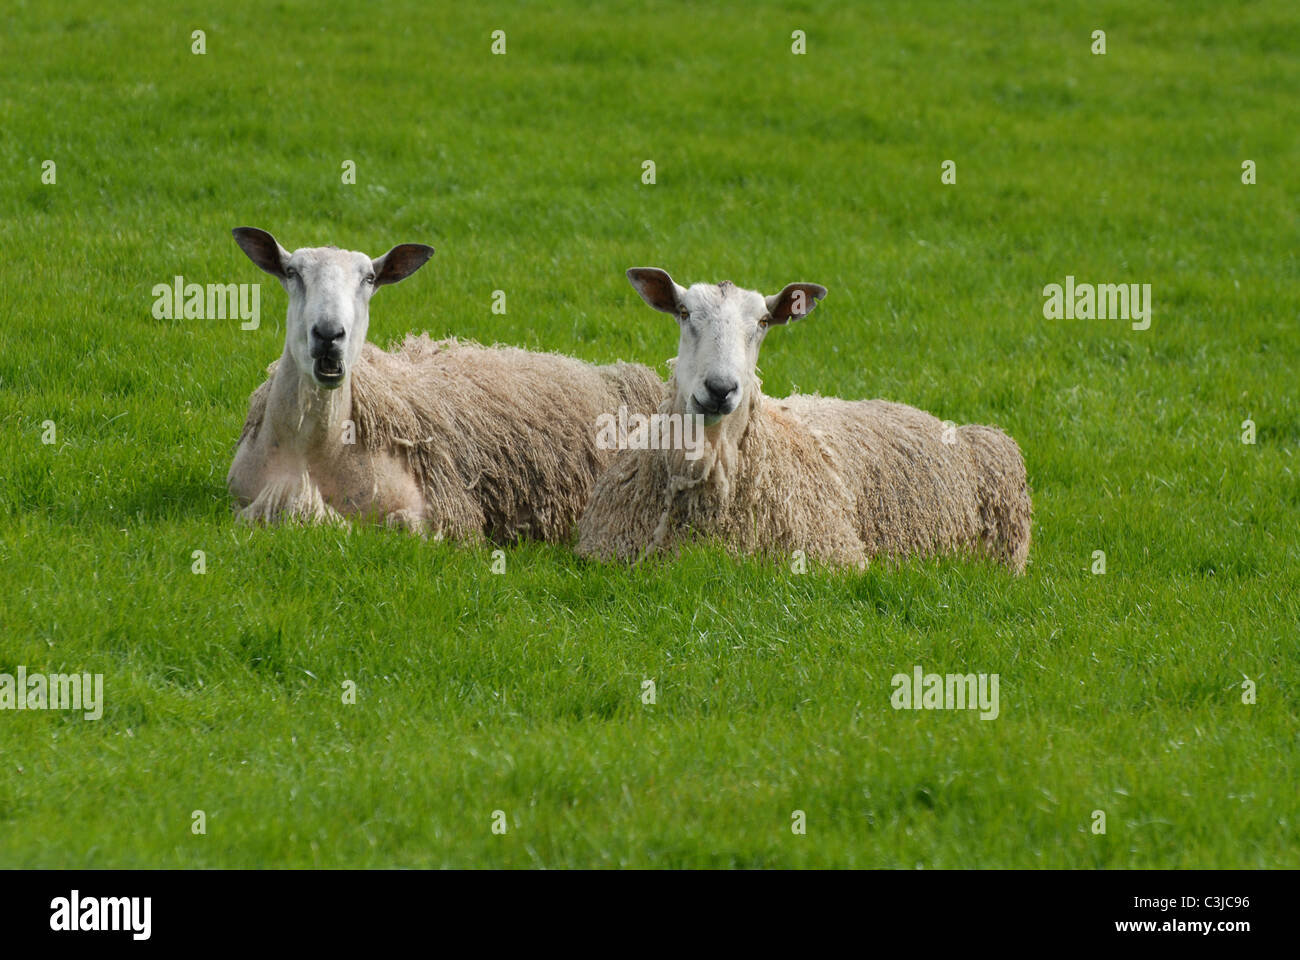 Due vecchie pecore prendendo un meritato riposo e contemplando il loro mondo dello Yorkshire Dales, Nord Ovest Inghilterra Foto Stock